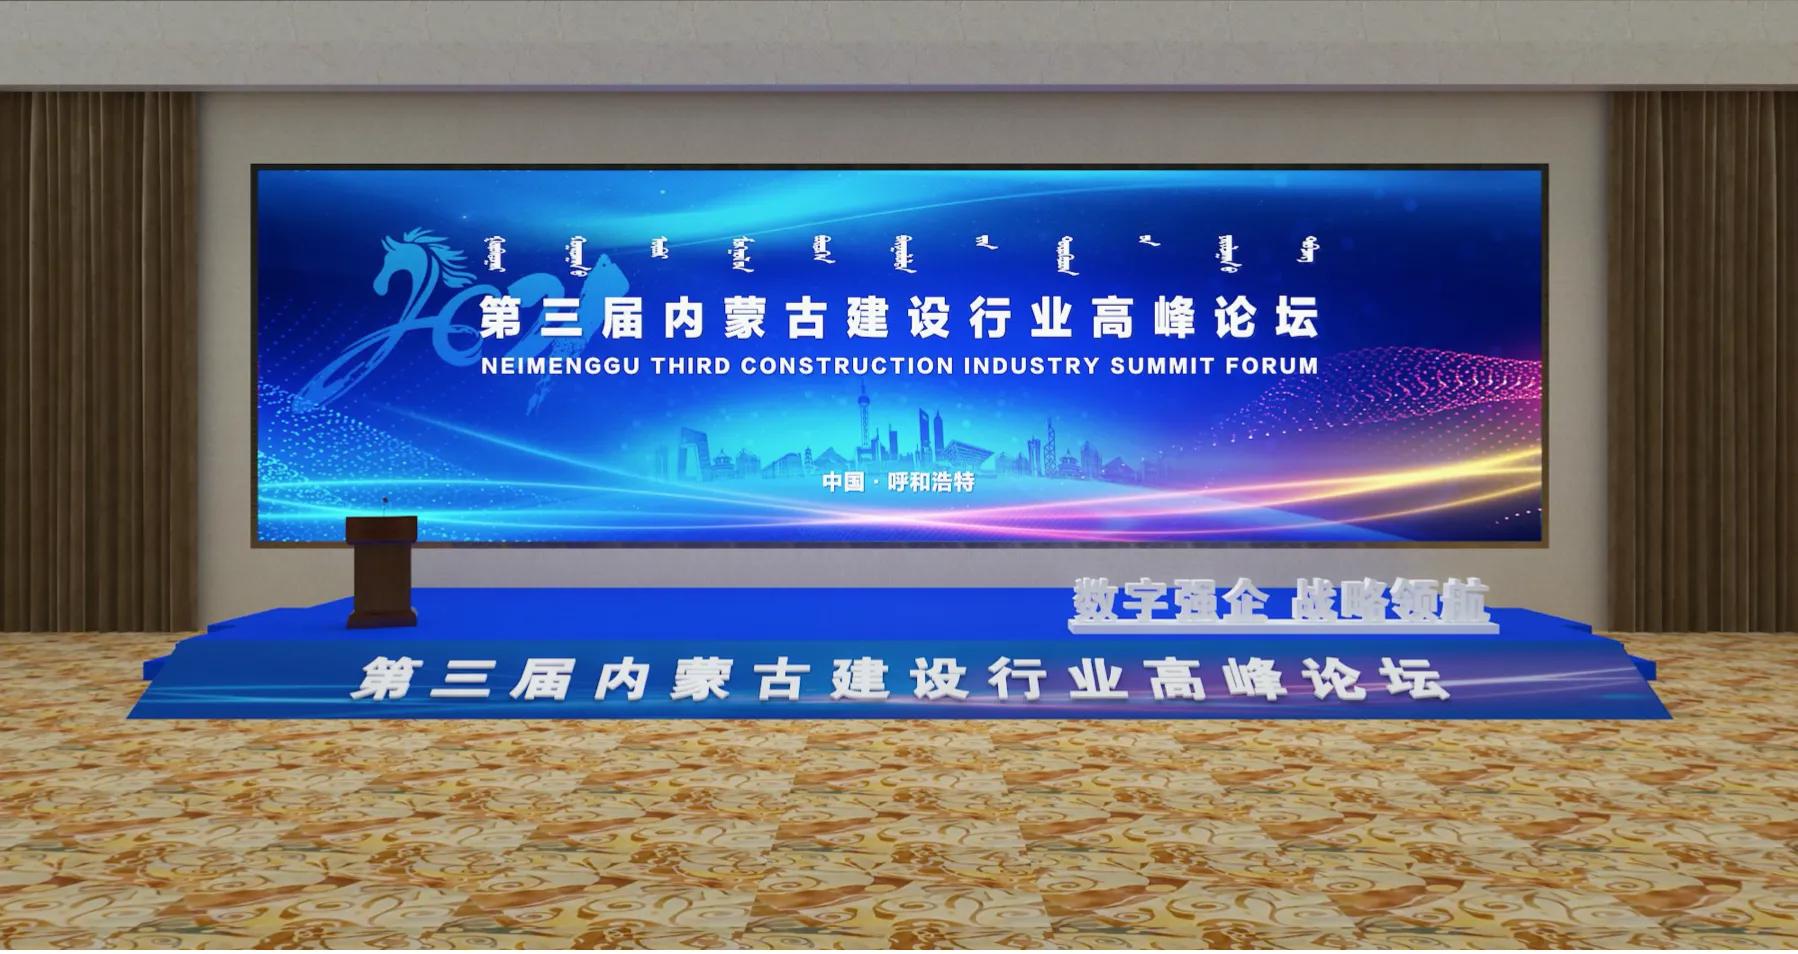 第三届内蒙古建设行业高峰论坛拟于10月21日举行